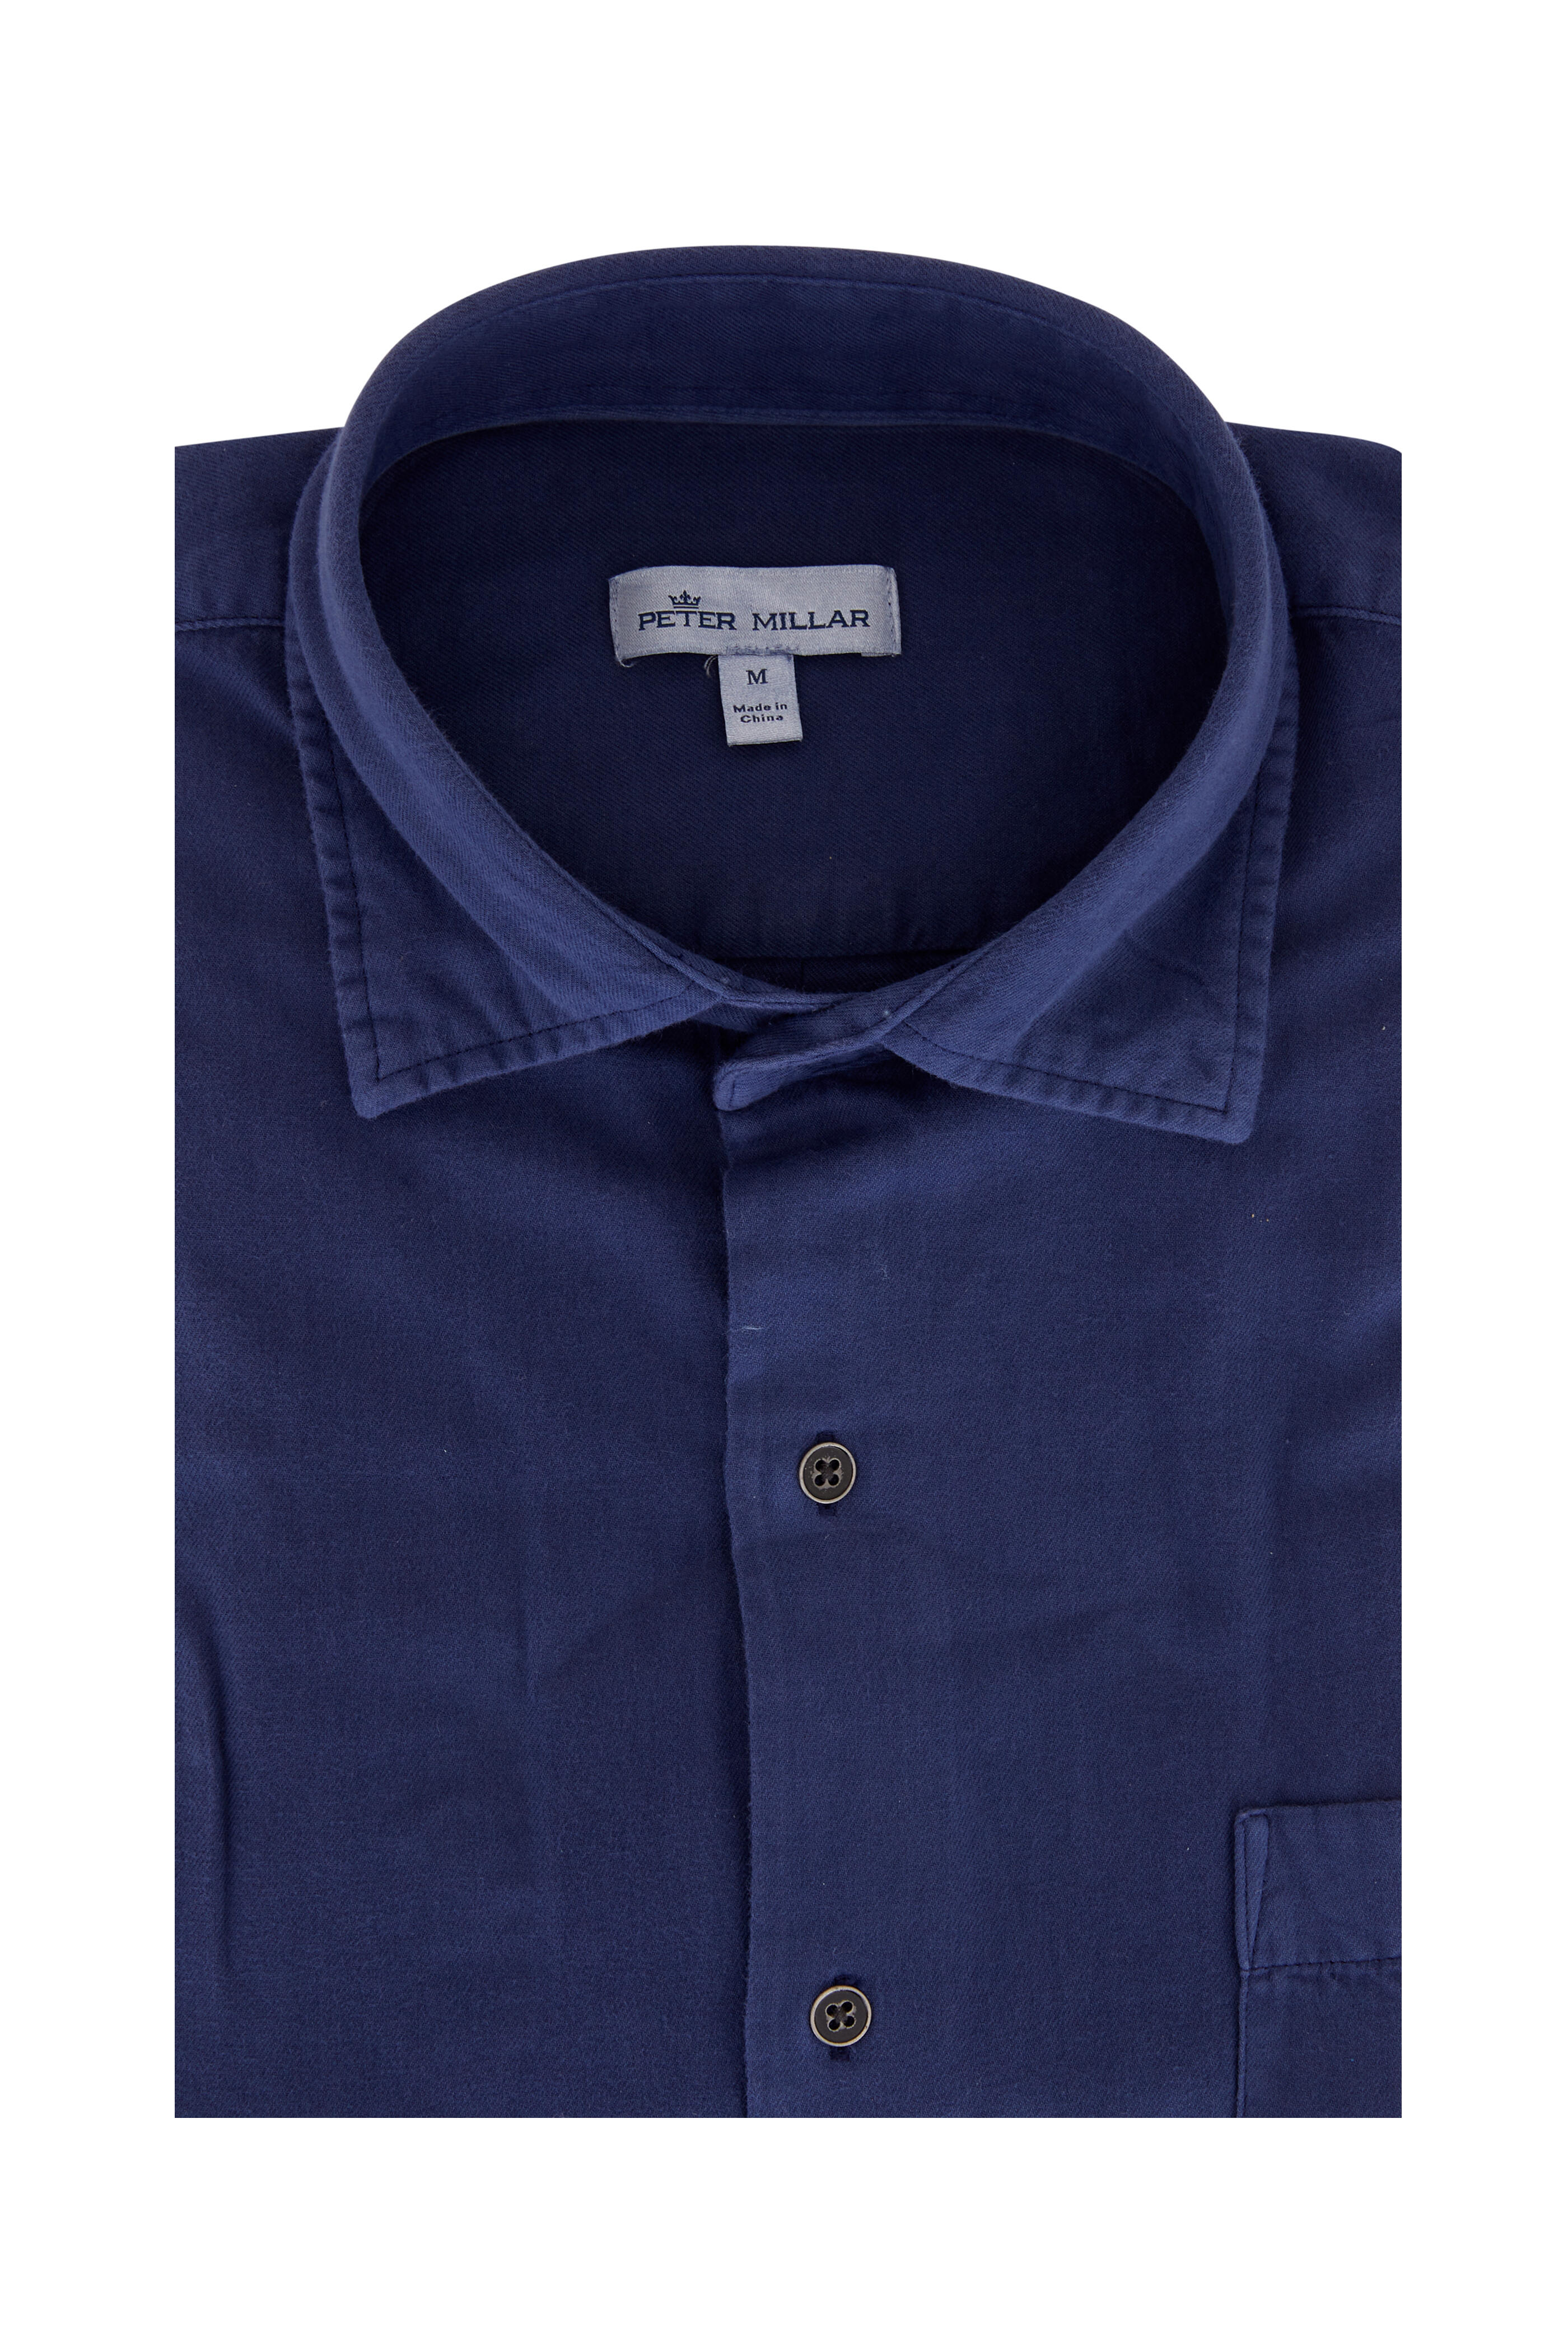 Peter Millar - Atlantic Blue Mountainside Cotton Sport Shirt